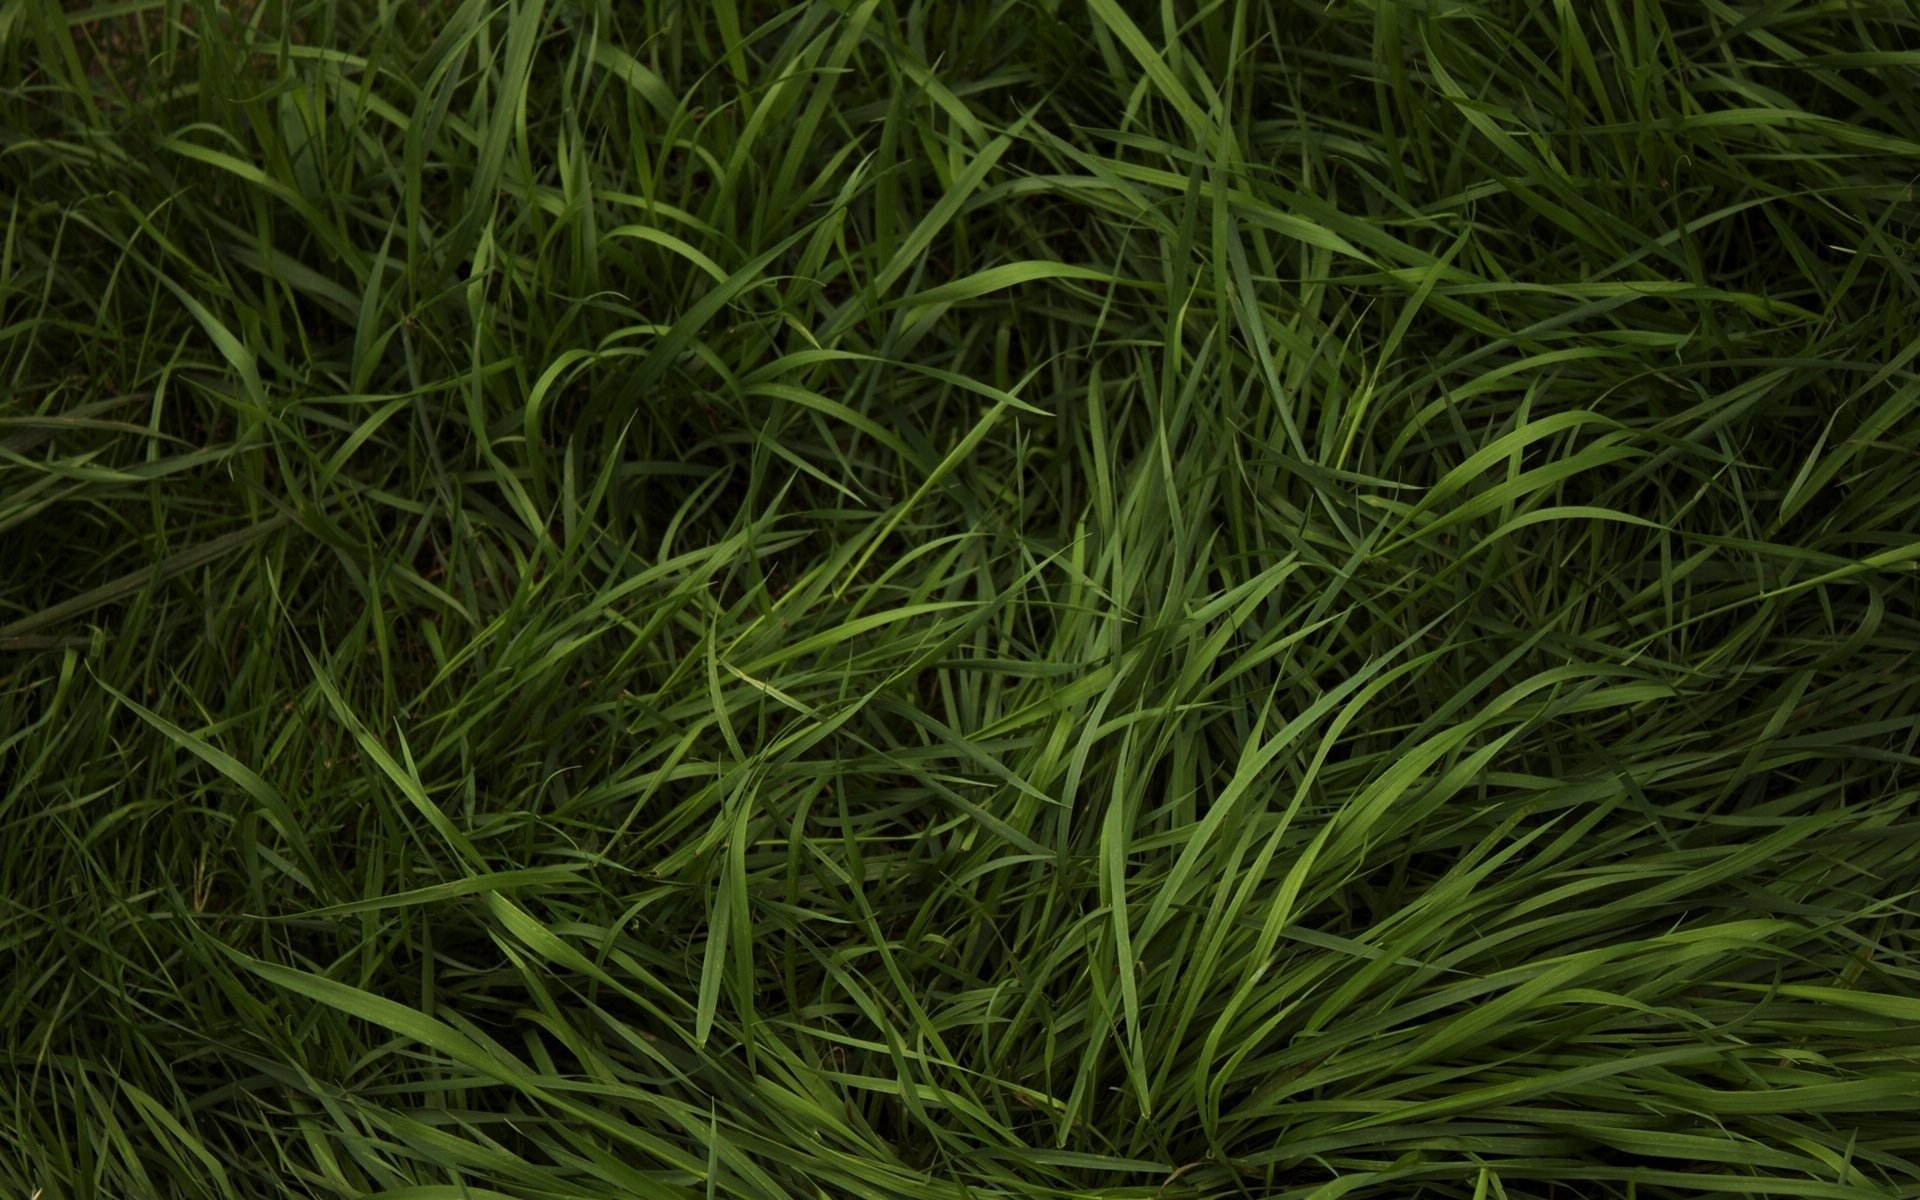 Green natural grass